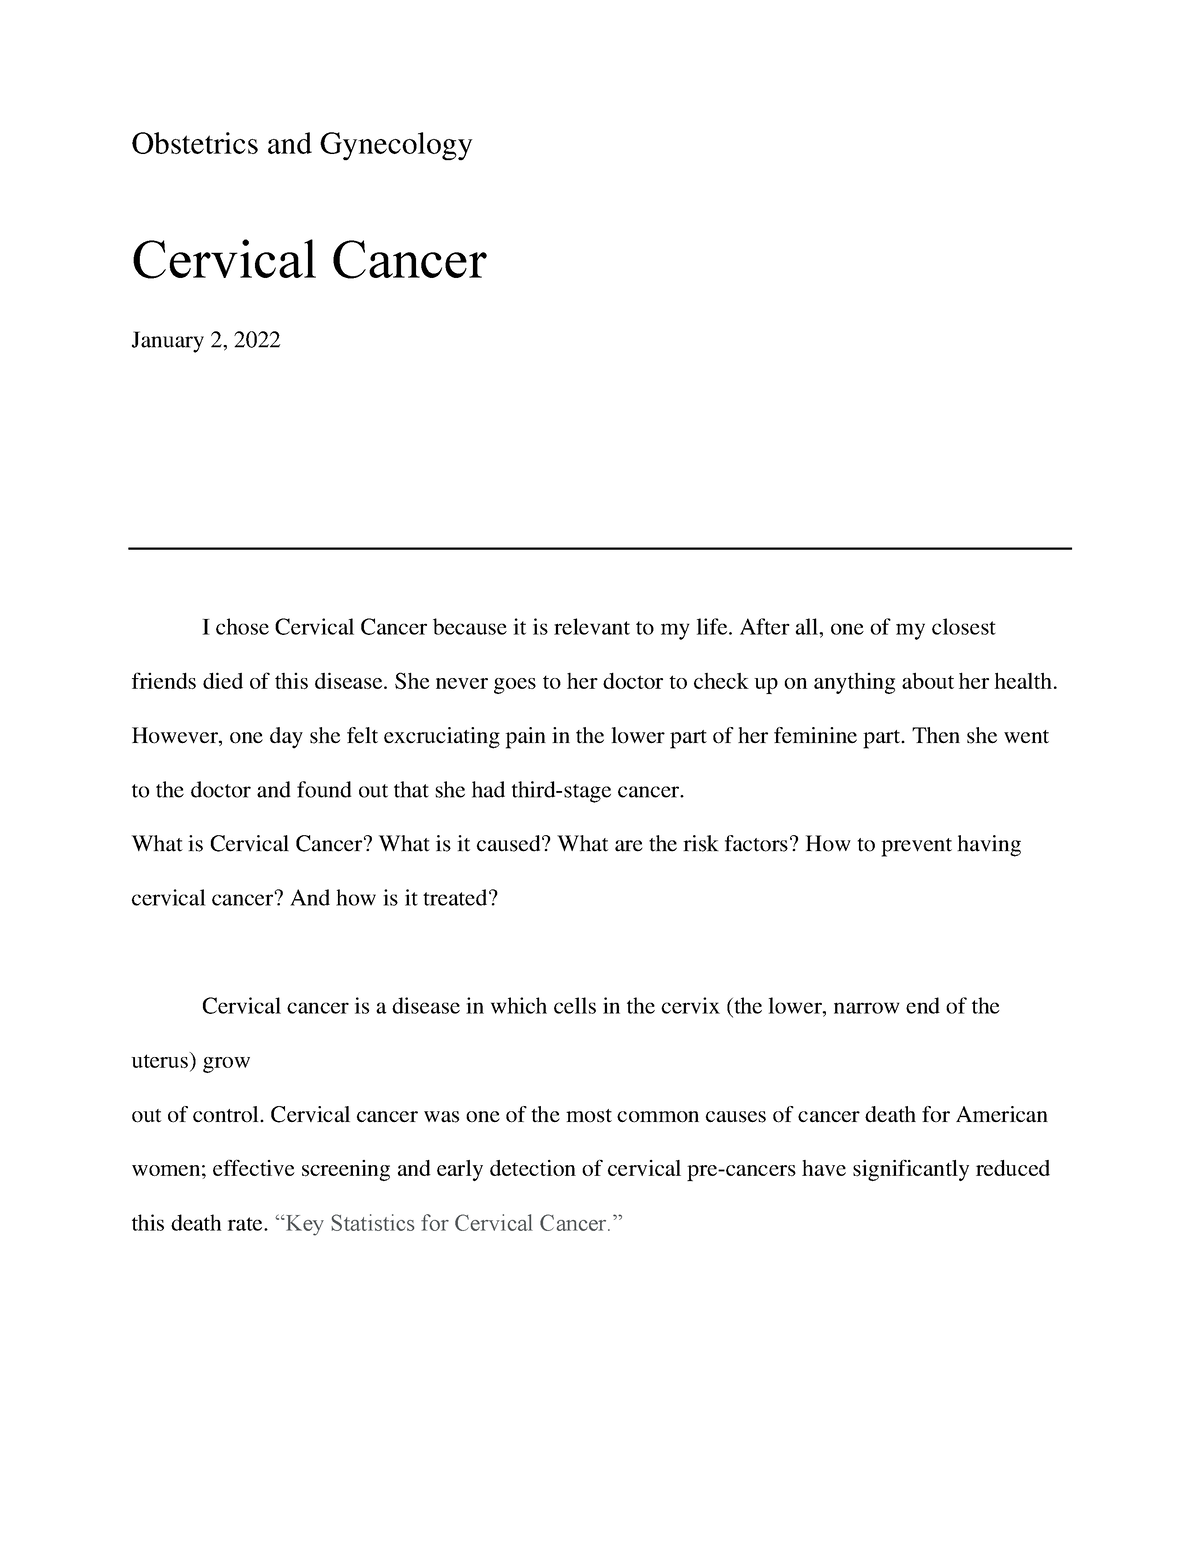 cervical cancer uk essay